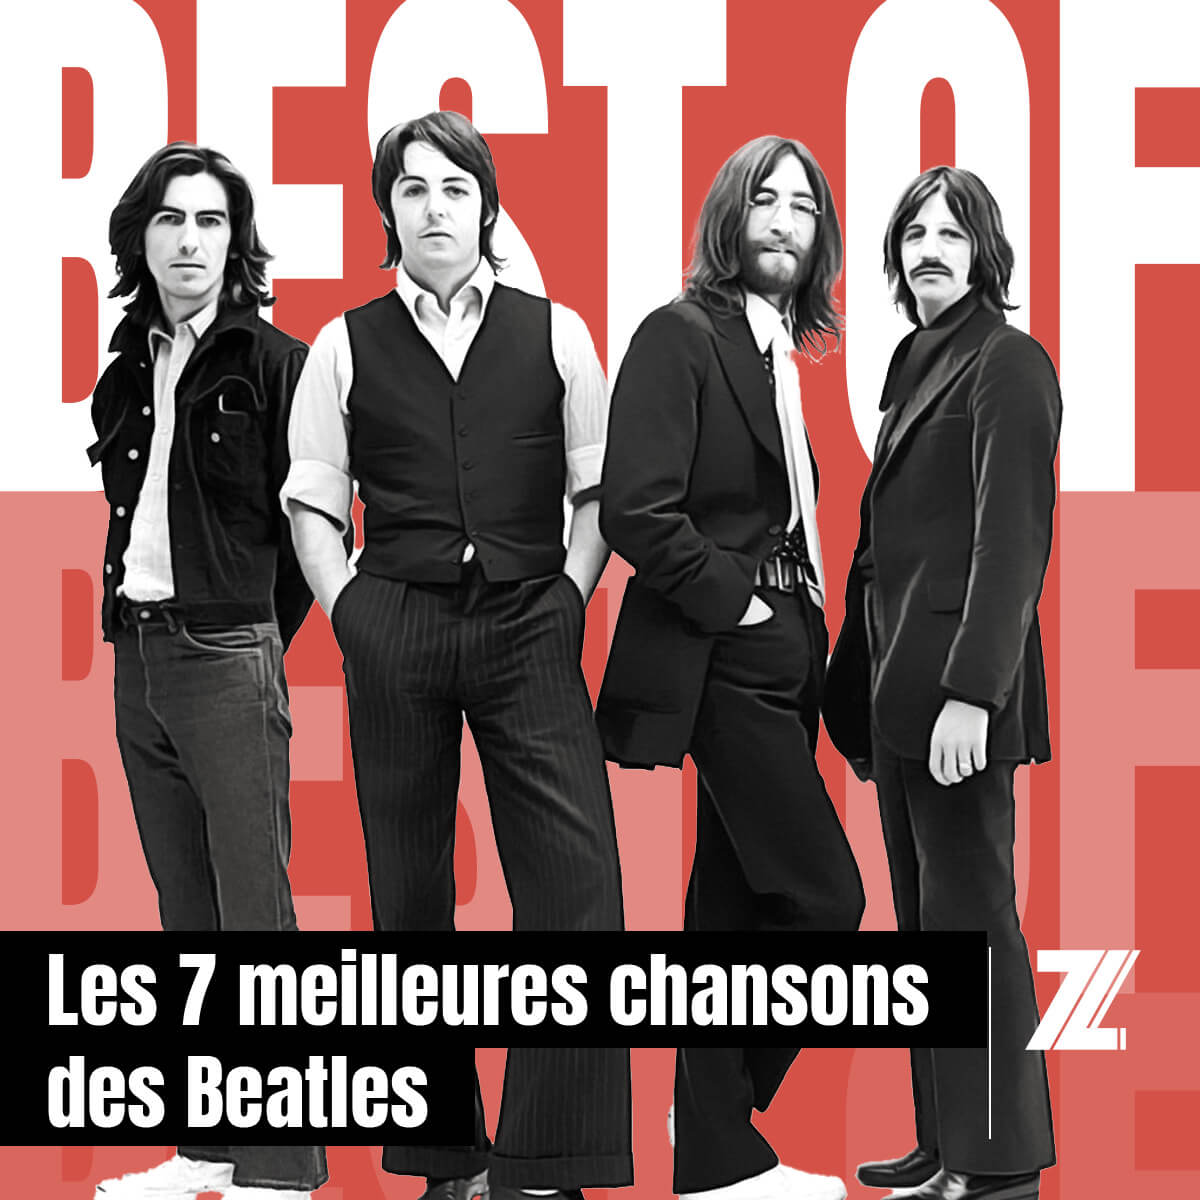 Best Of The Beatles - 7zic